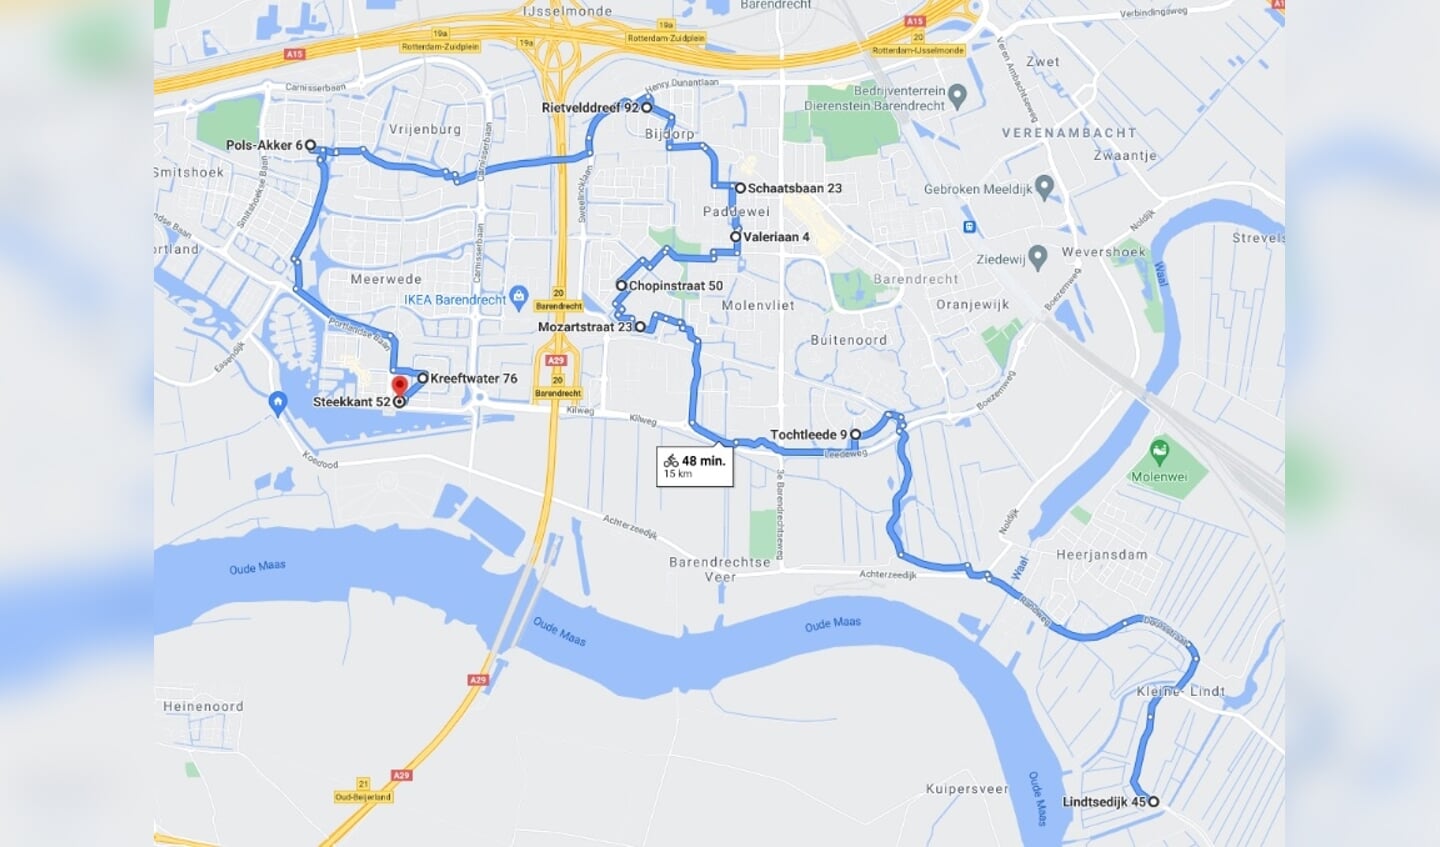 De route langs de minibiebs in Barendrecht en (eentje) in Heerjansdam.